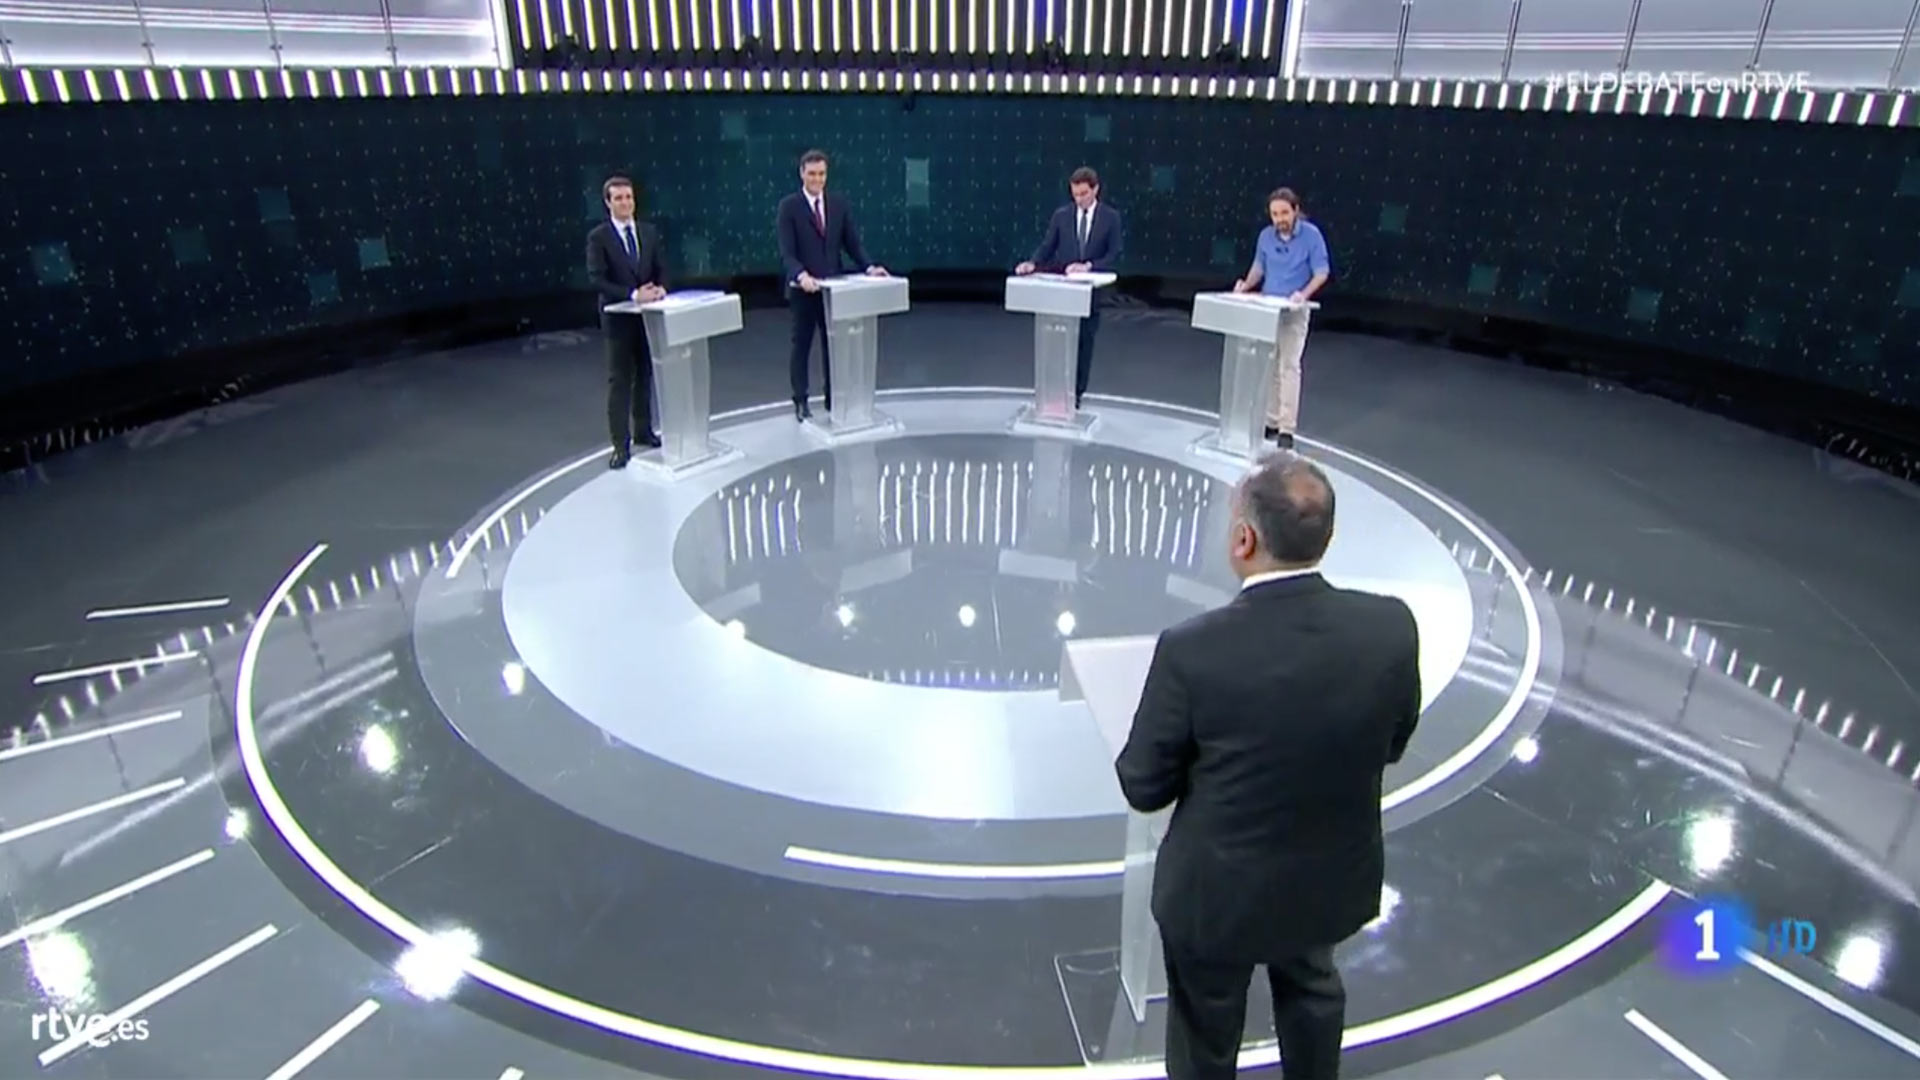 Pedro Sánchez, en el debate de RTVE: "Queremos reformar la Constitución para blindar las pensiones"